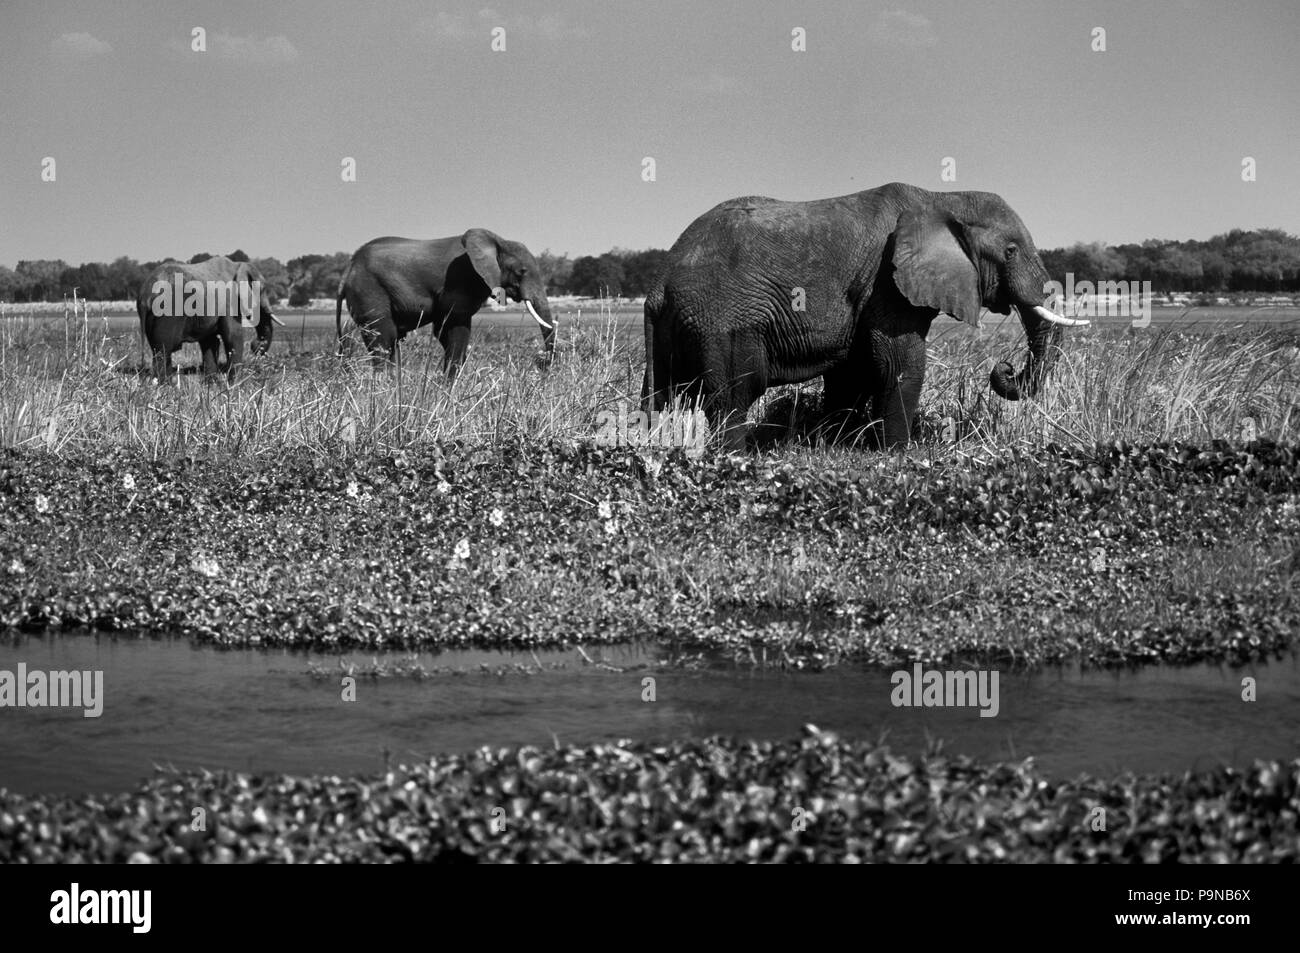 Les éléphants africains (Loxodanta africana) de nourriture dans les eaux peu profondes de la rivière Zambezi - Zimbabwe Banque D'Images